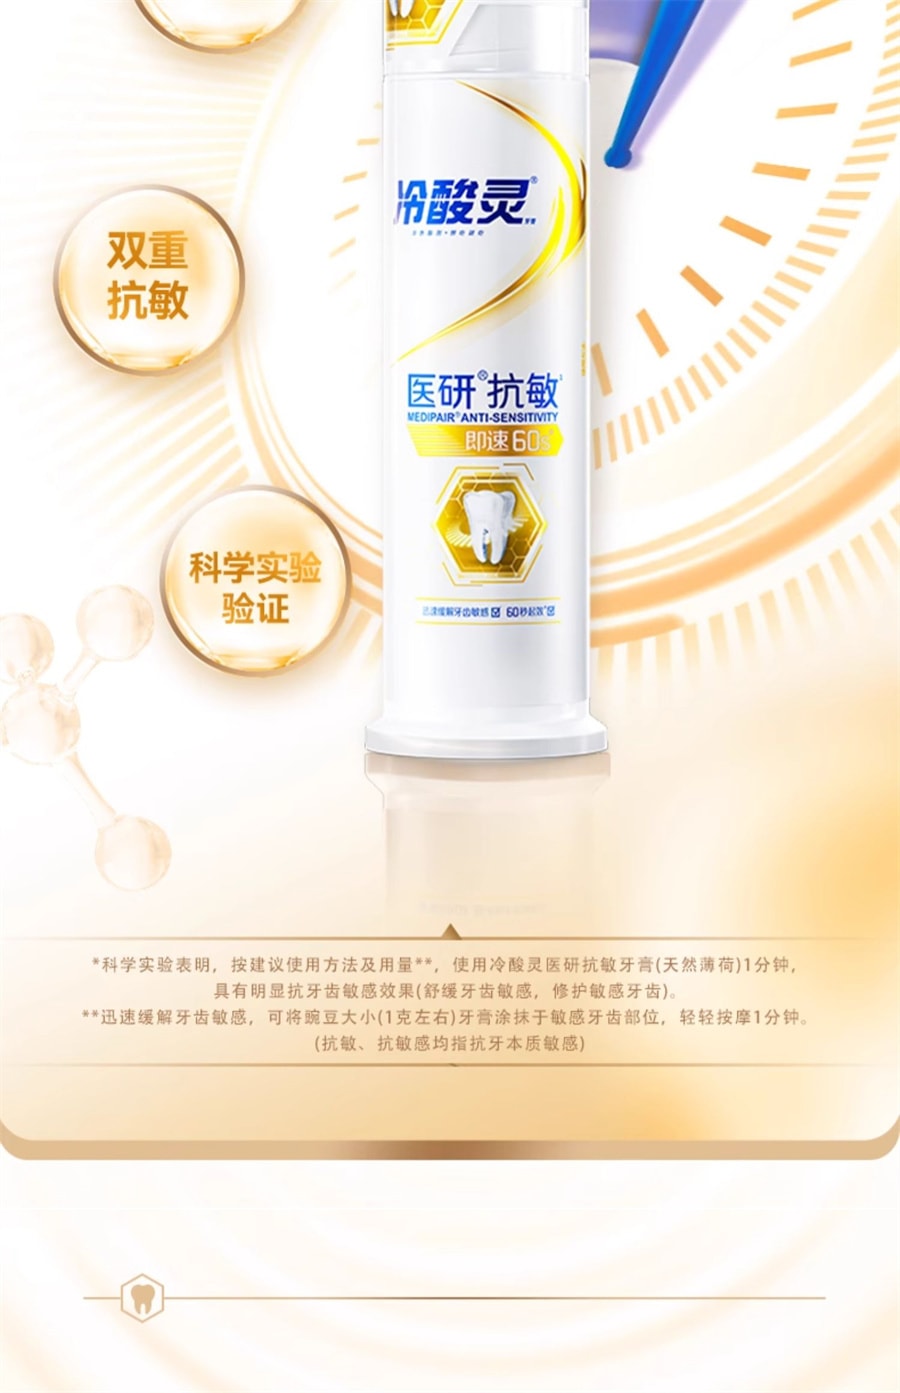 【中國直郵】冷酸靈 醫研抗敏牙膏即速60s抗敏感幫浦成人按壓式牙膏 120g/支